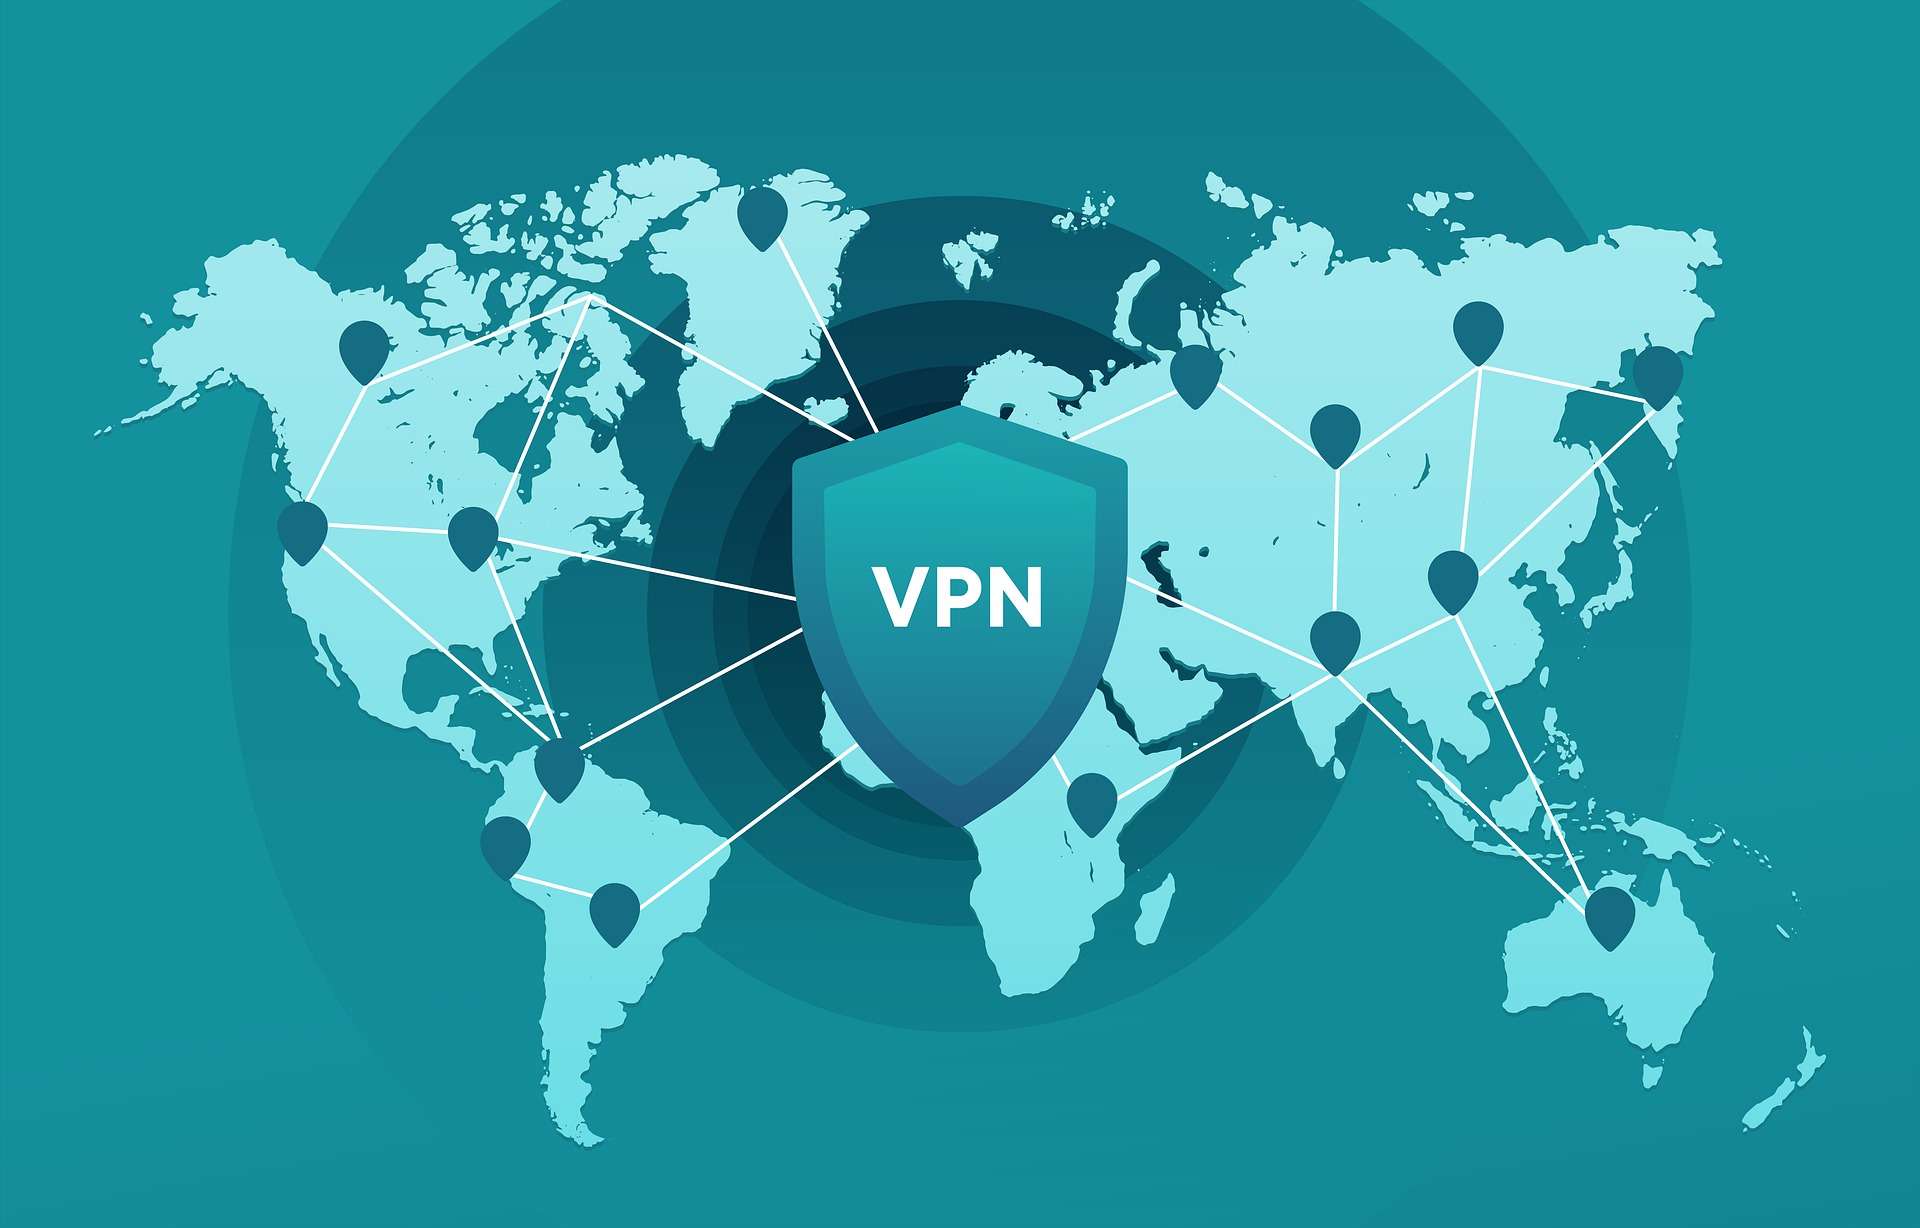 CyberGhost VPN propose une offre à moins de 2 € par mois © Pixabay